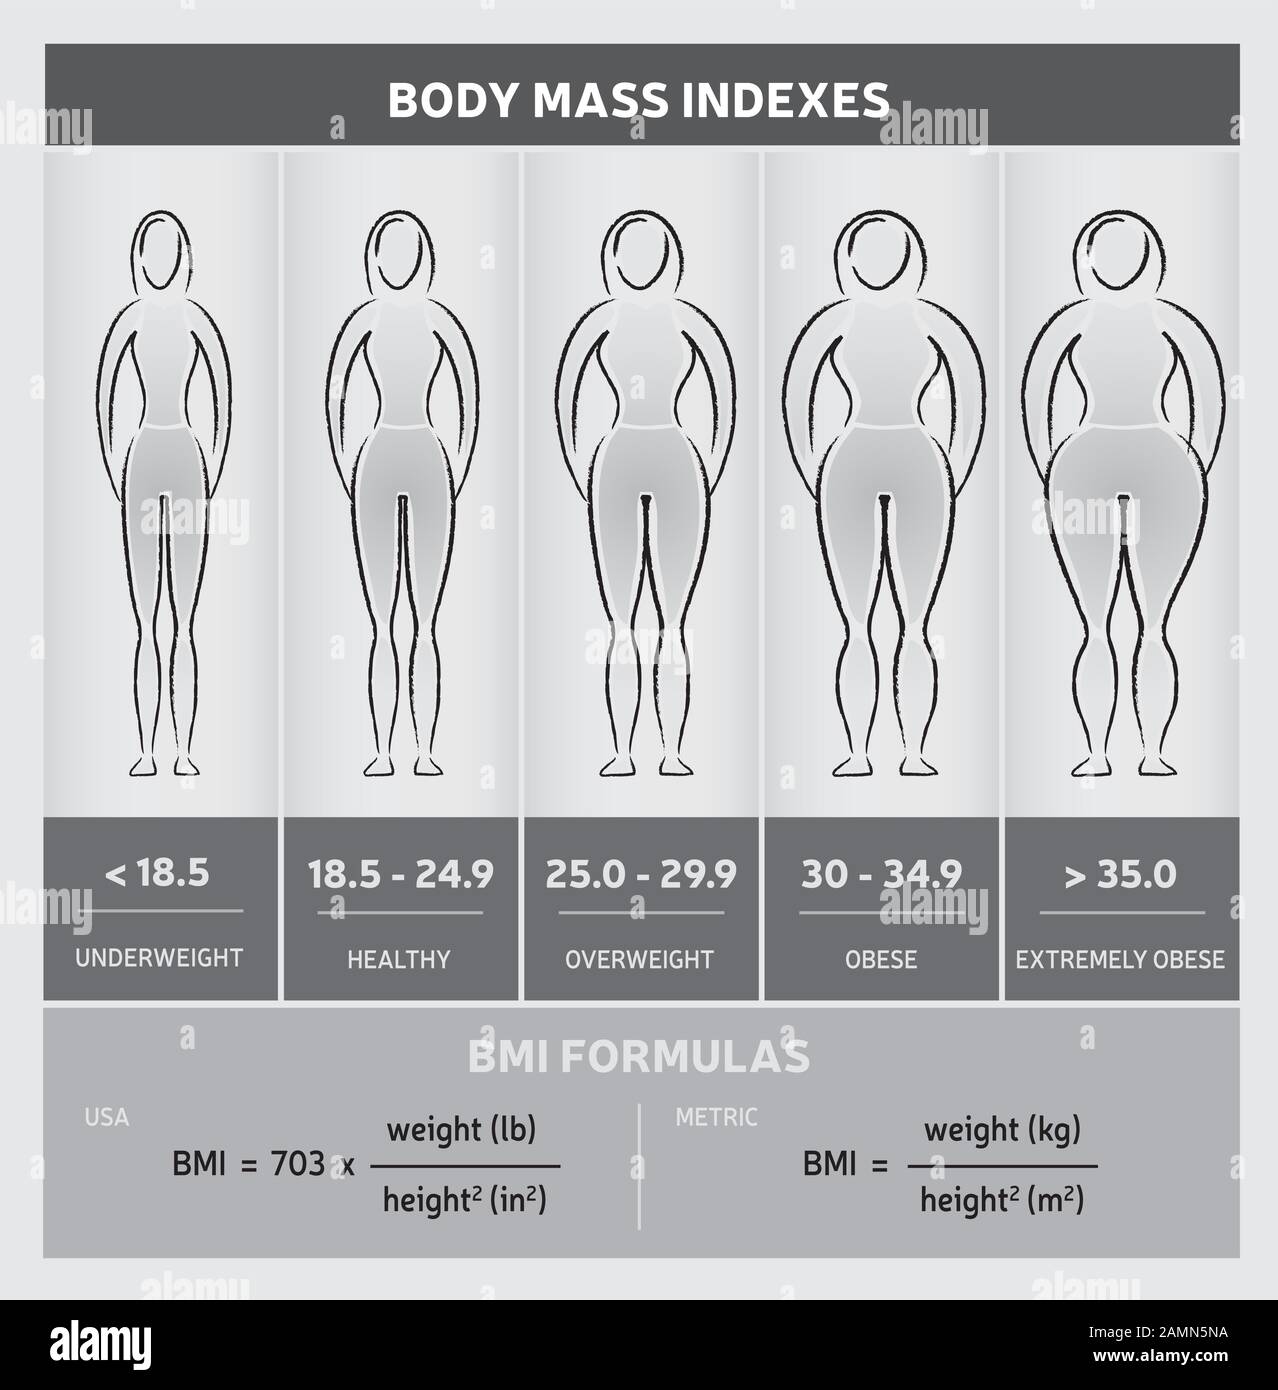 Corpo Mass Index Illustrazione Con Donna Body Silhouette, Che Mostra Cinque Classi E Formule Illustrazione Vettoriale